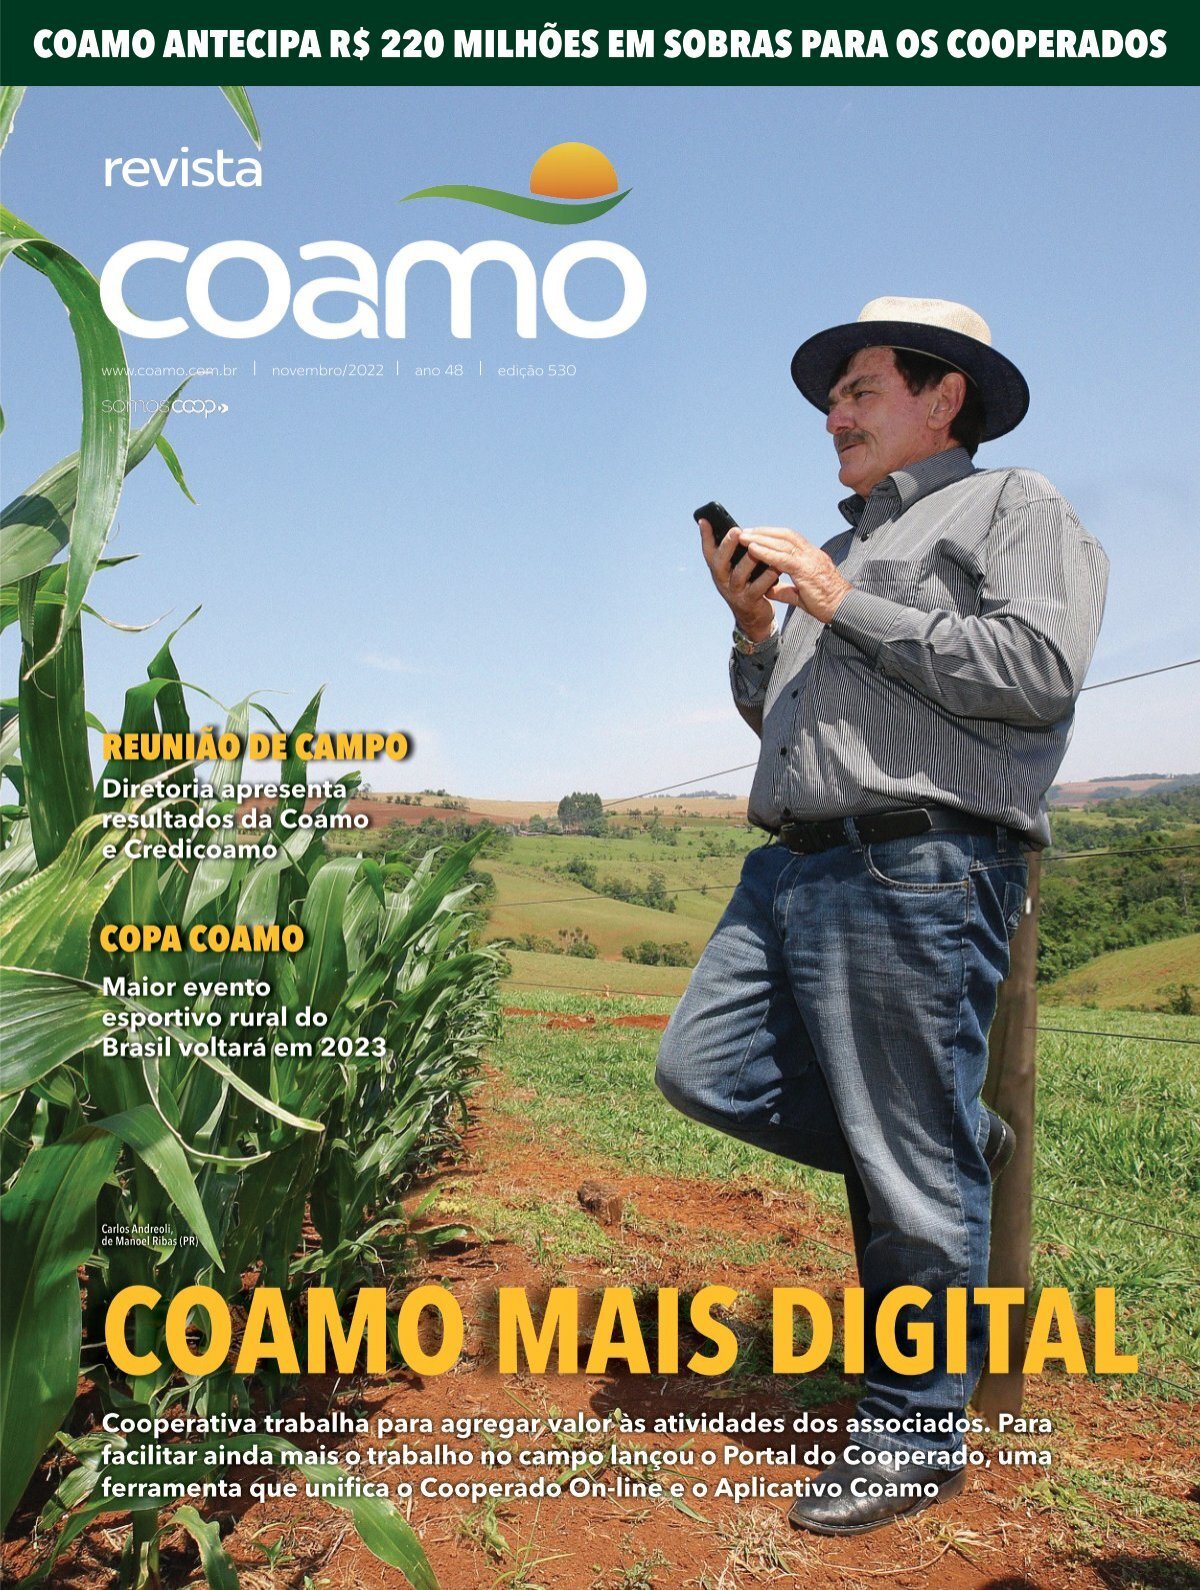 IHARA é premiada na XIX Mostra de Comunicação do Agro - Portal do  Agronegócio